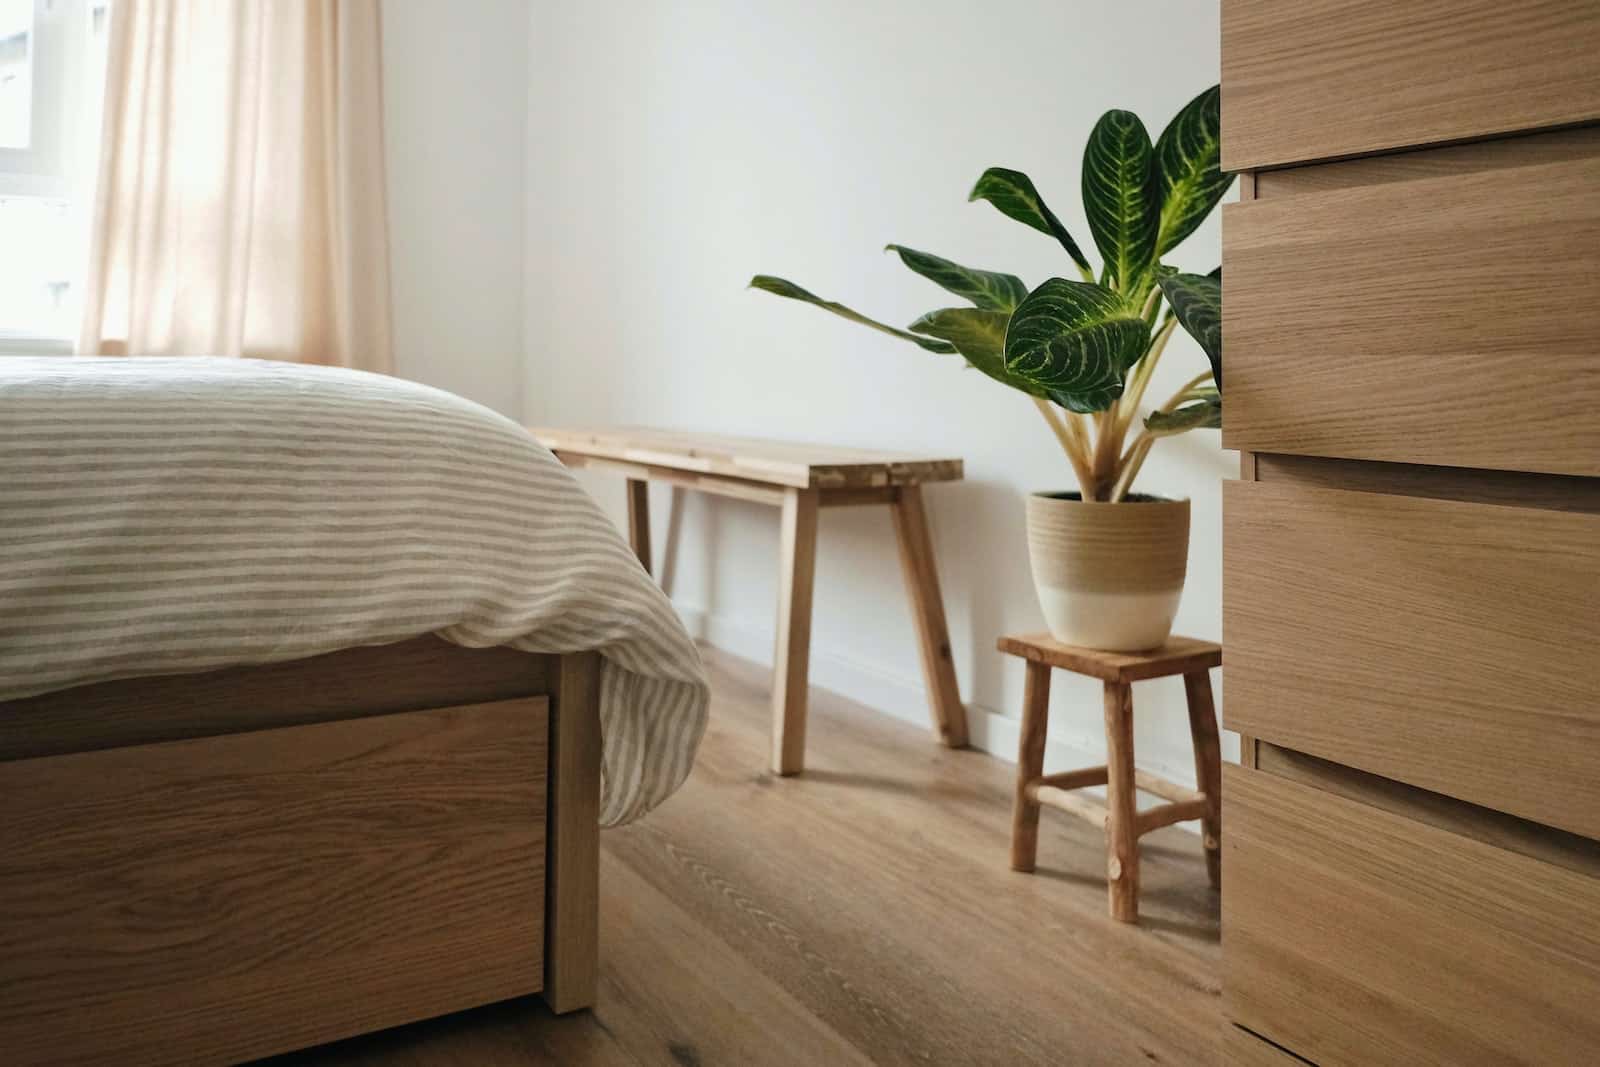 i3s oha 5k4 12 Best Bedroom Plants: Cleaner Air & Better Sleep 1